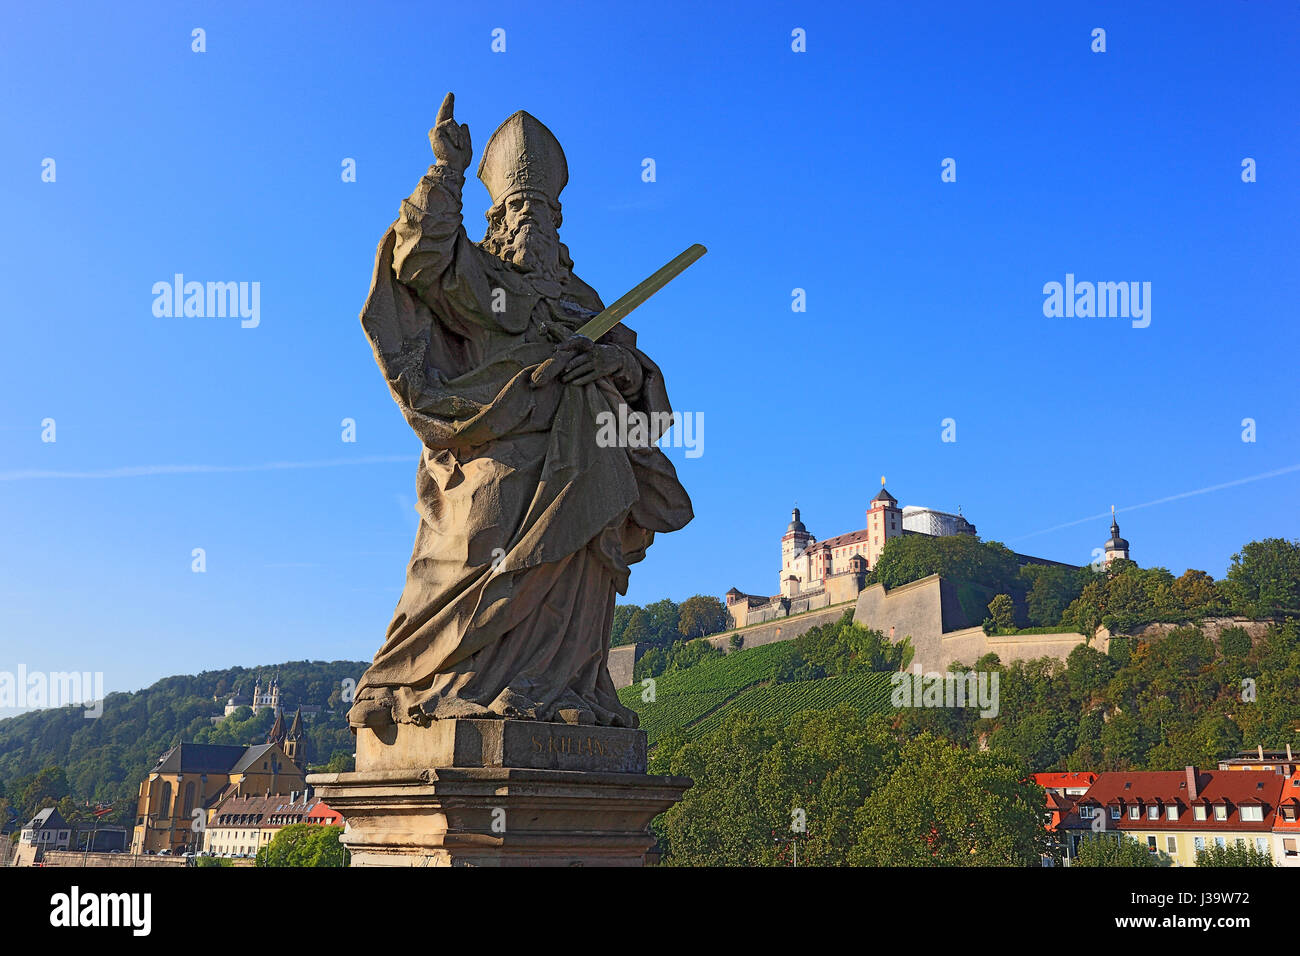 Deutschland, Unterfranken, Stadt Wuerzburg, die Festung Marienberg und der Heilige Kilian, einer der Frankenapostel auf der Alten Mainbruecke Stock Photo